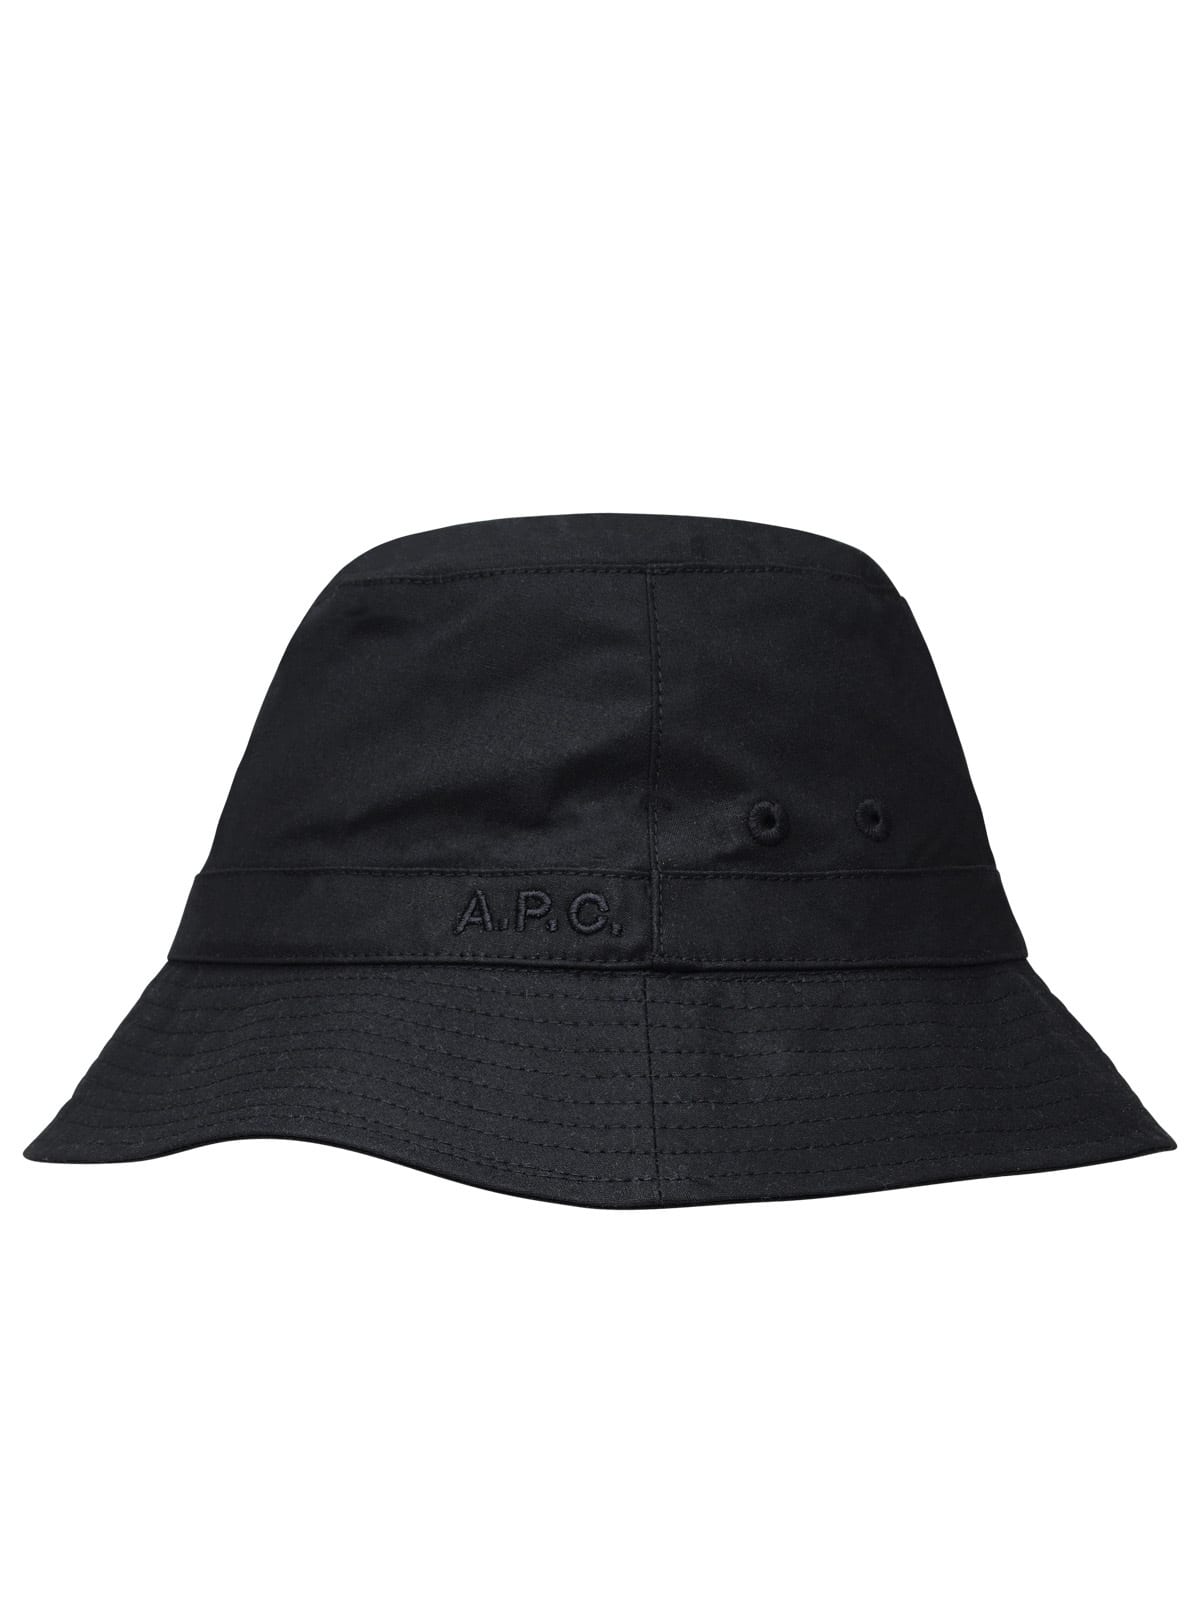 Shop Apc Black Cotton Cap